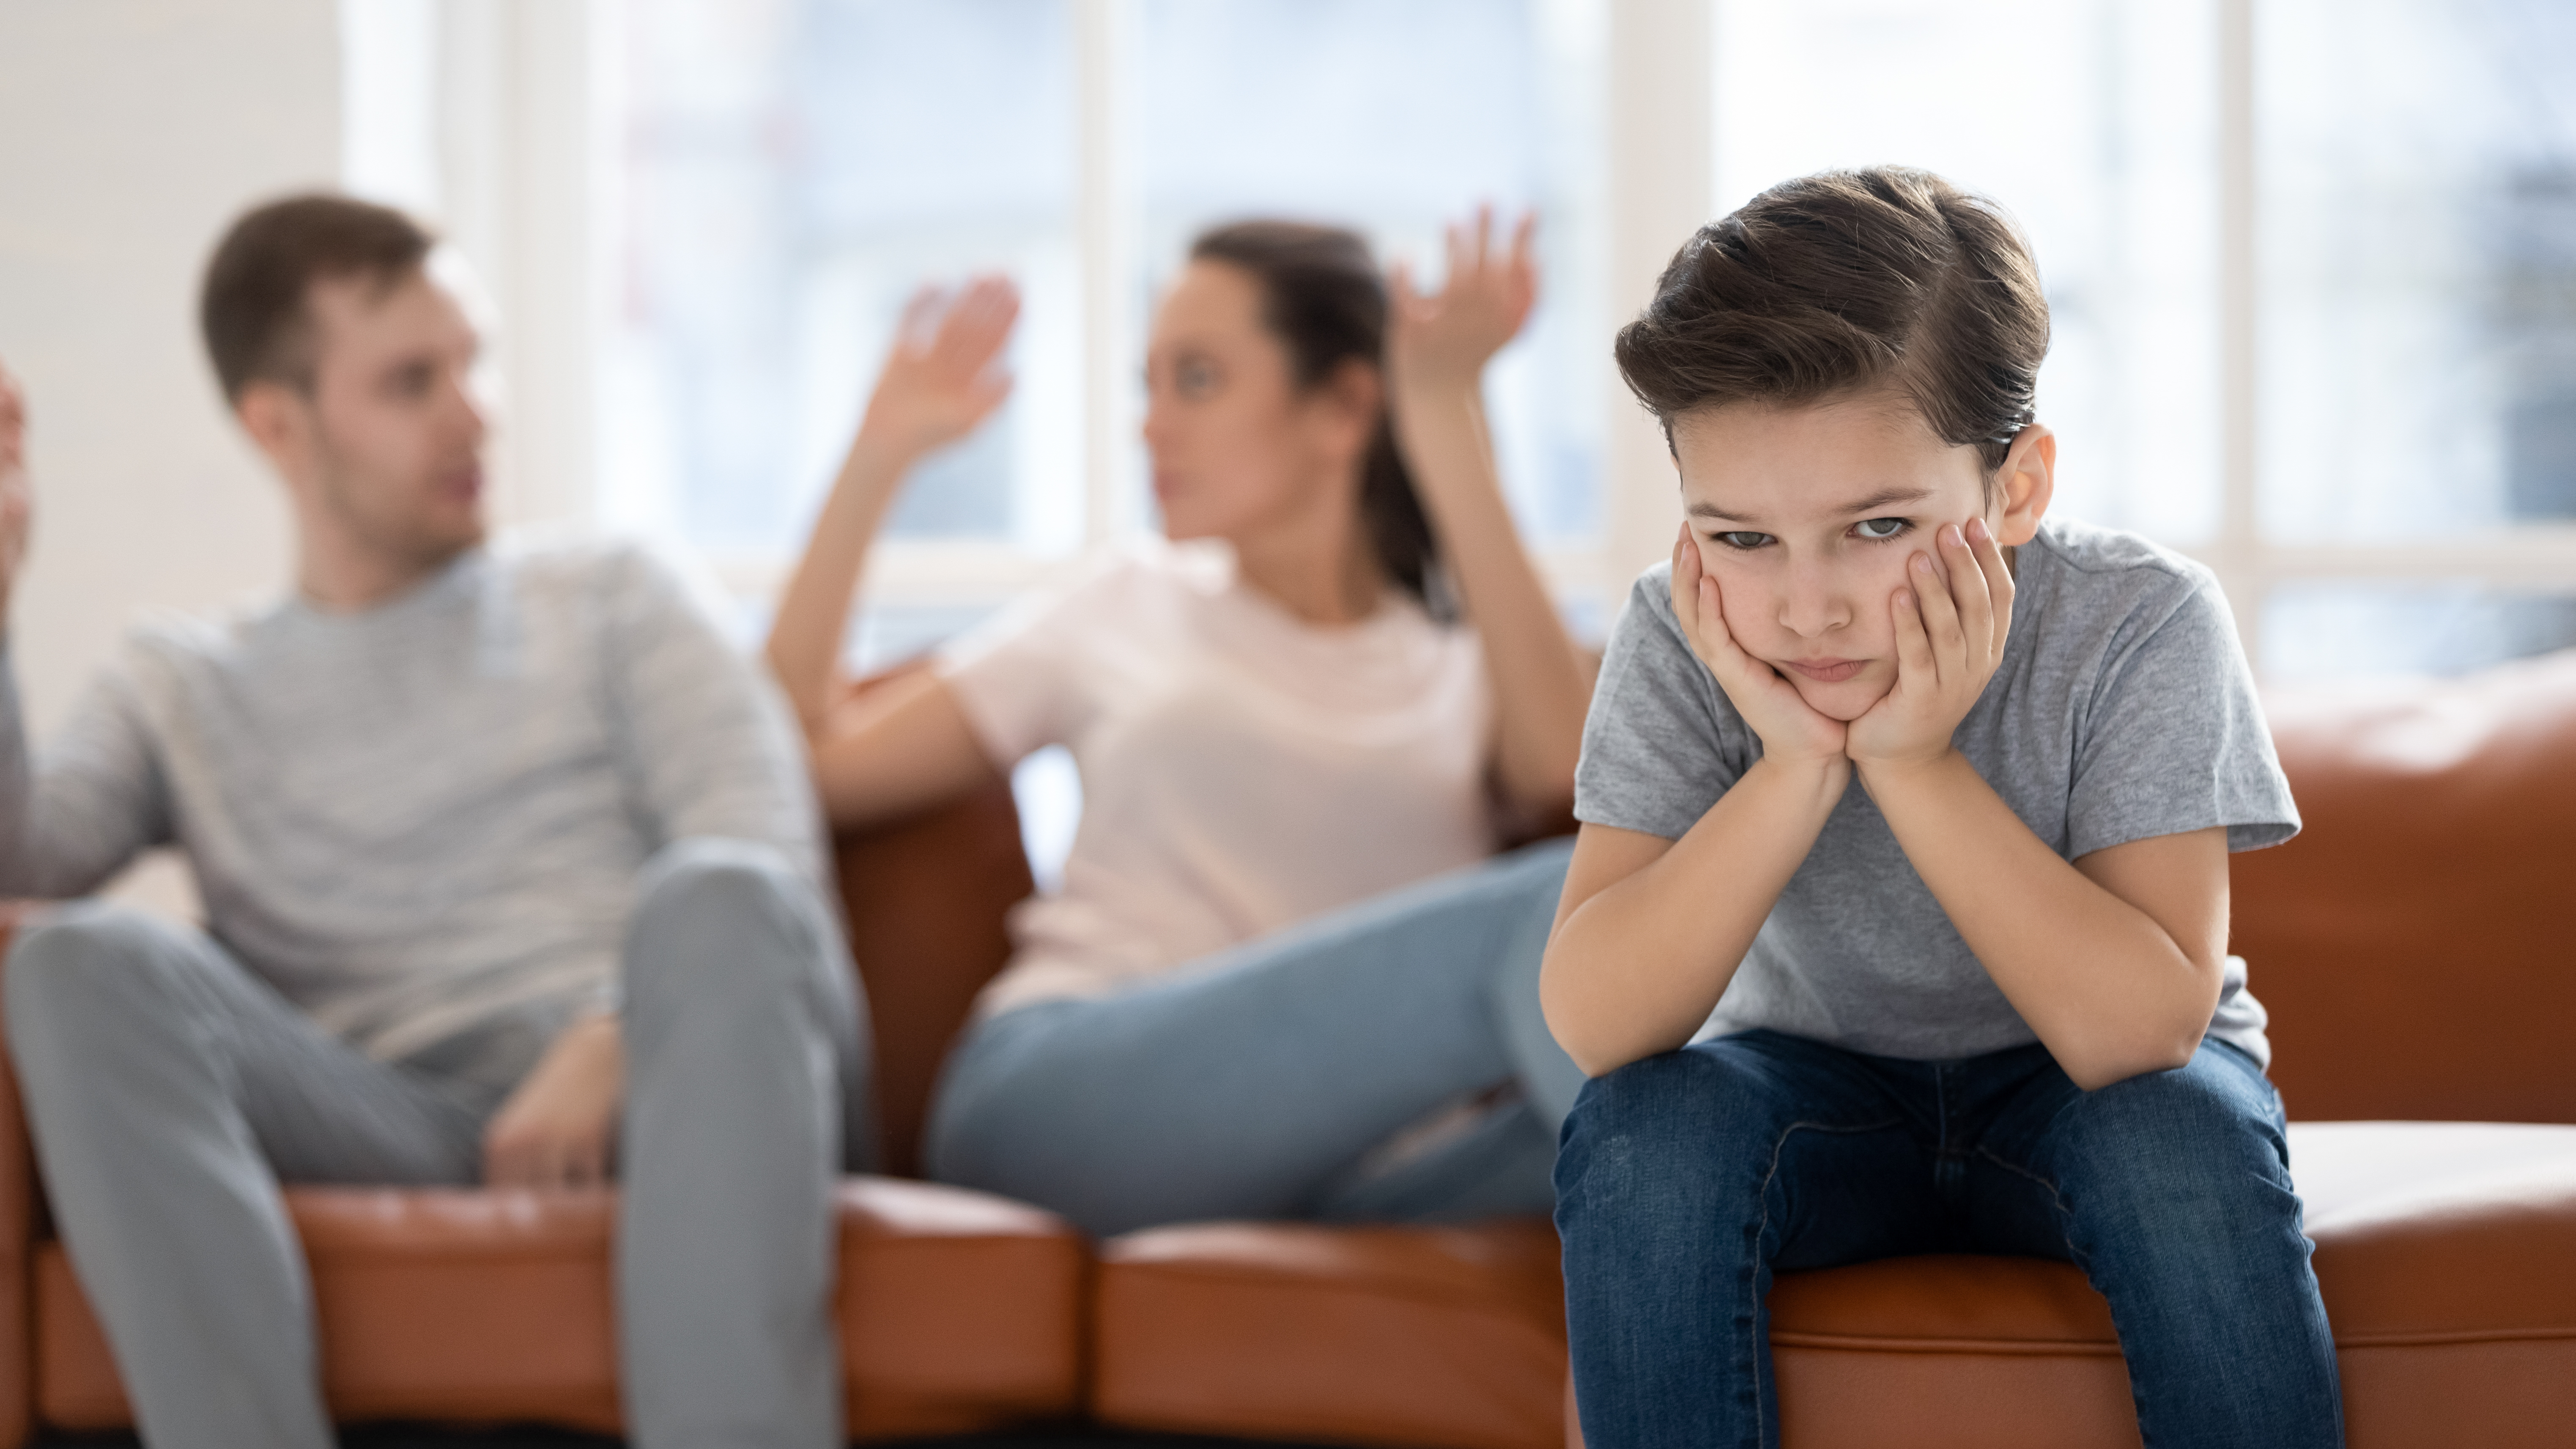 Un enfant frustré par des parents qui se disputent | Source : Shutterstock